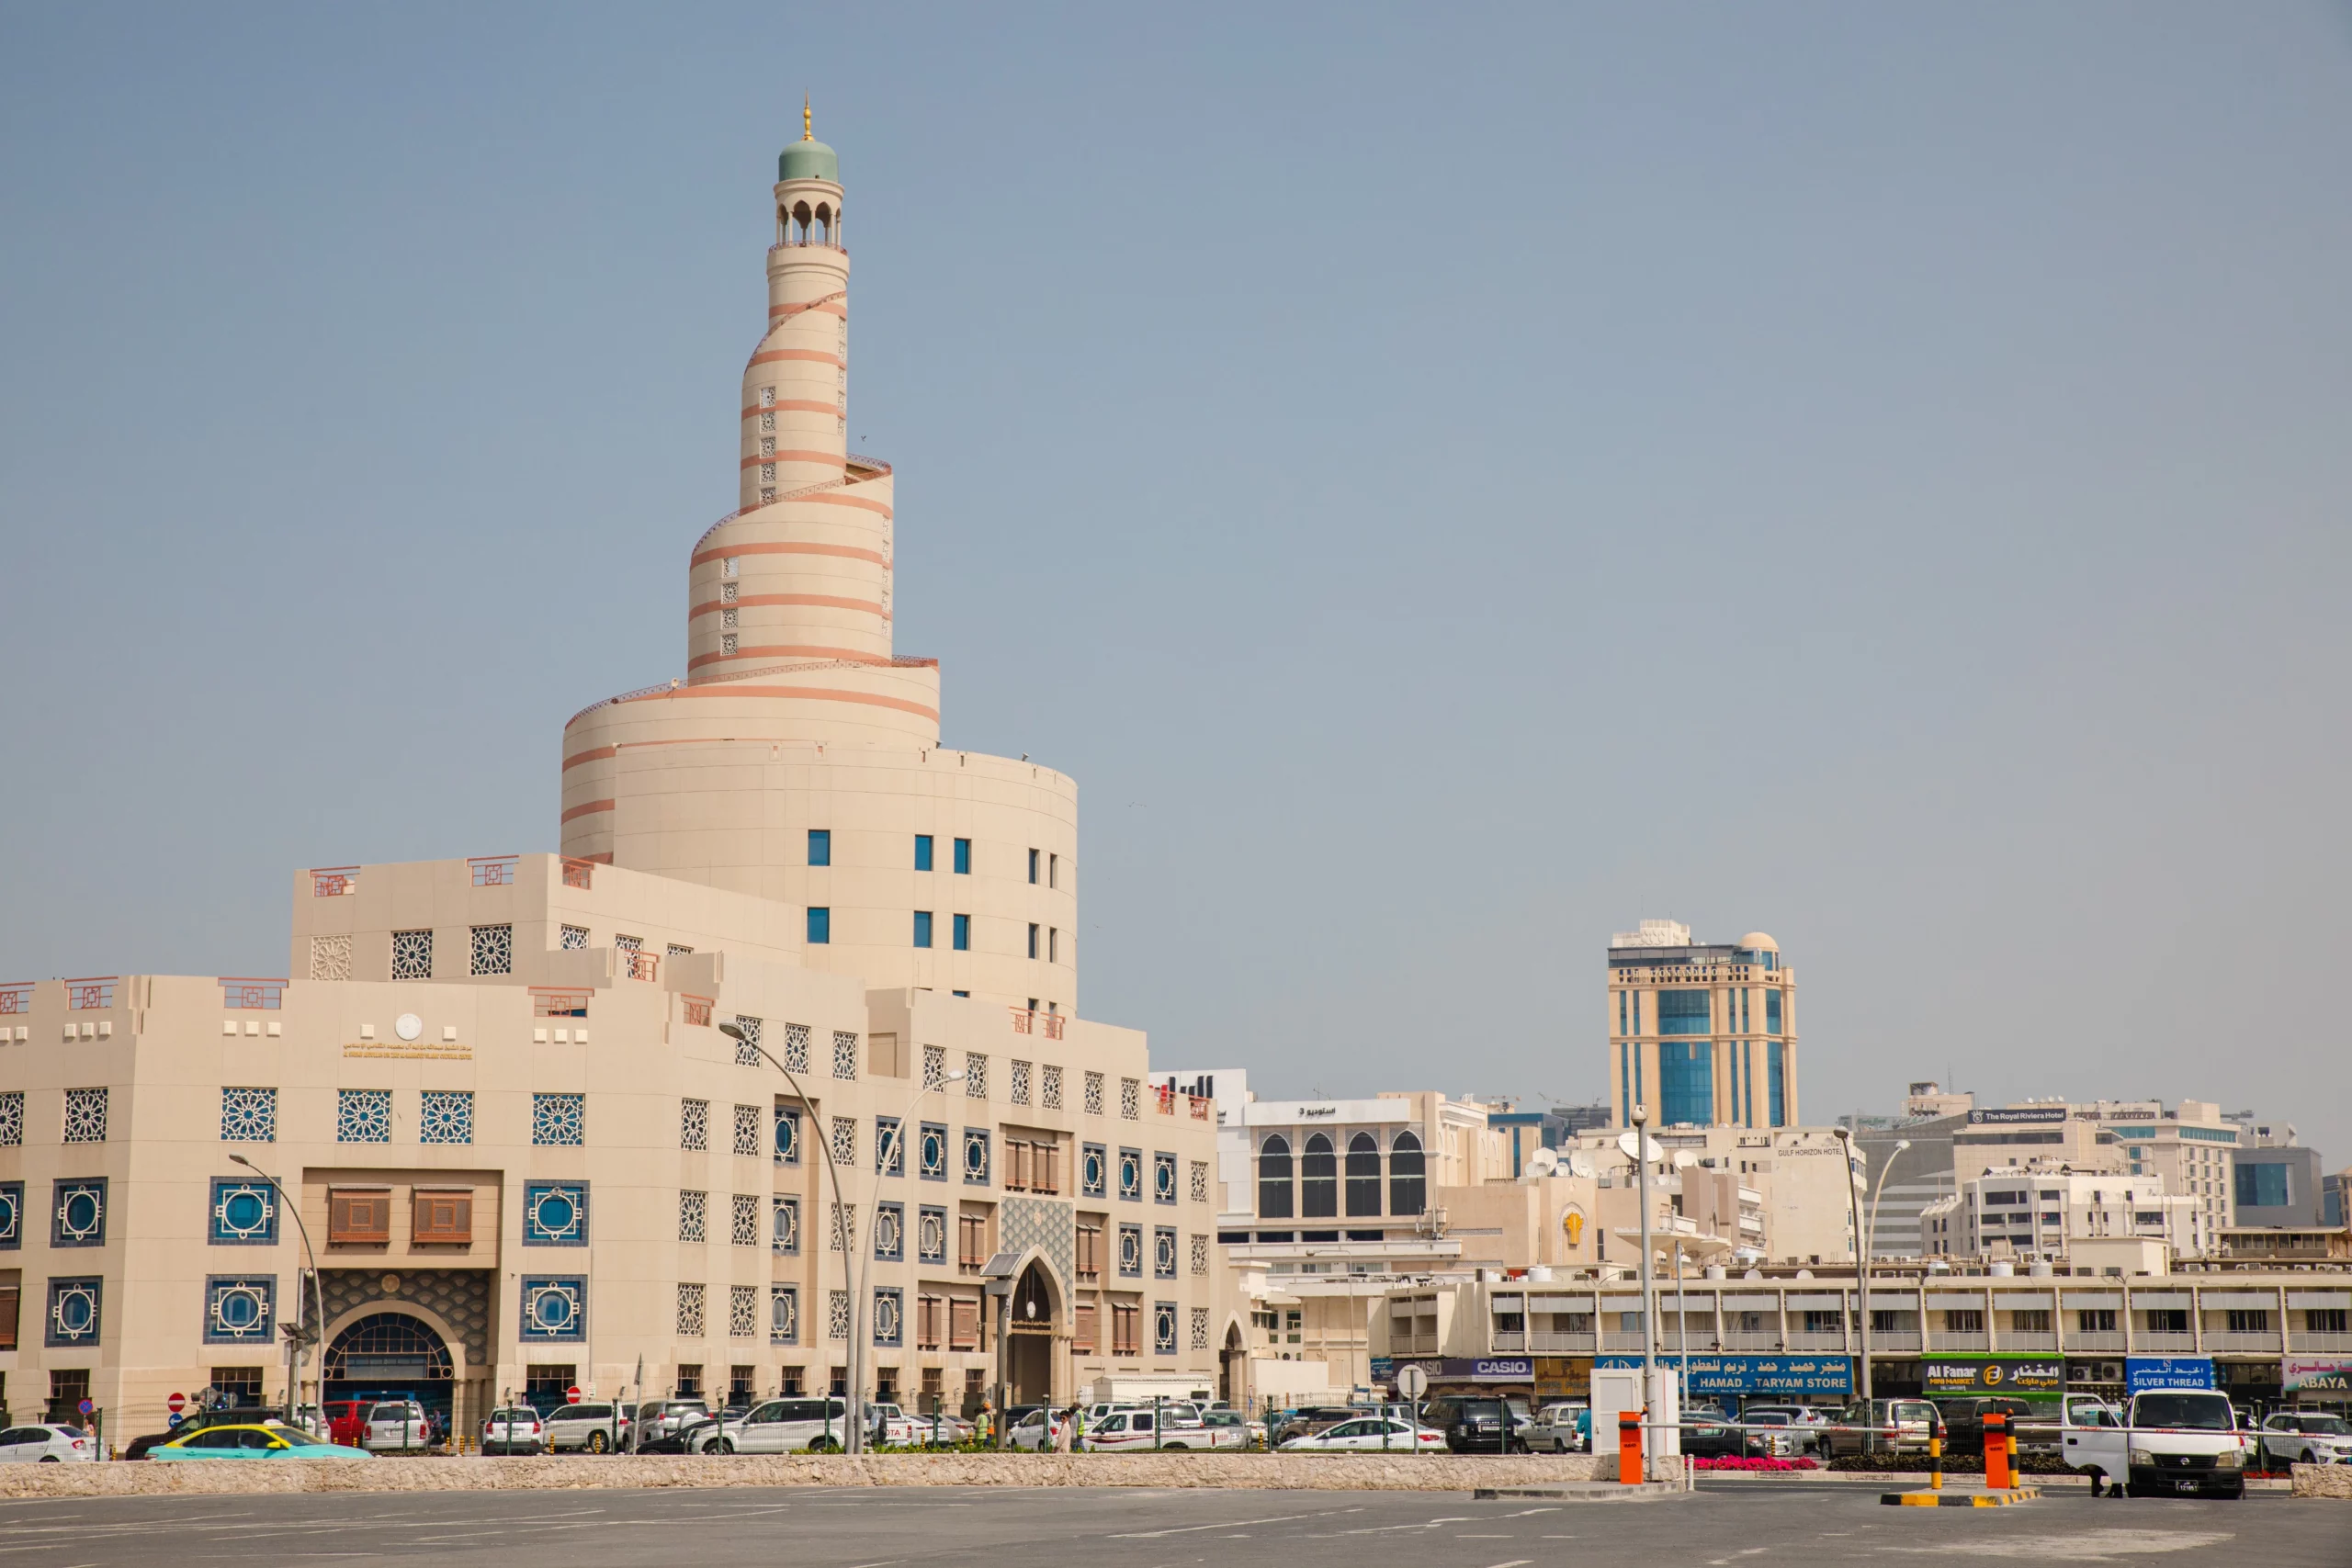 The Qatar Islamic Cultural Center